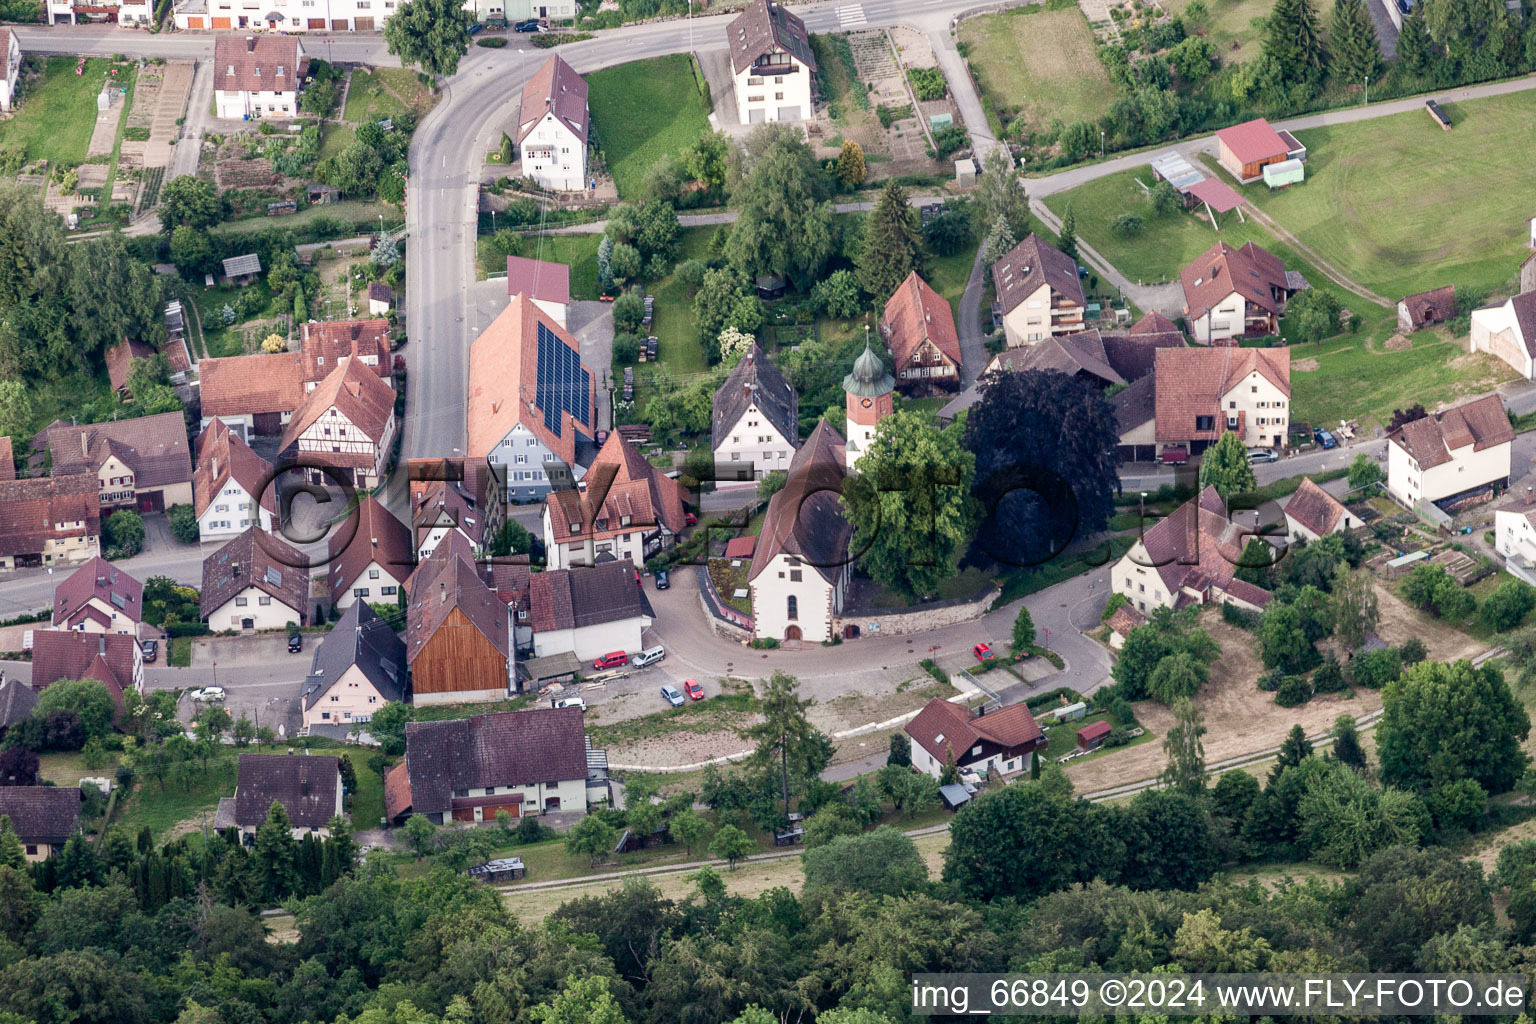 Vue aérienne de L'église Saint-Michel à Sulz am Eck dans le département Bade-Wurtemberg, Allemagne